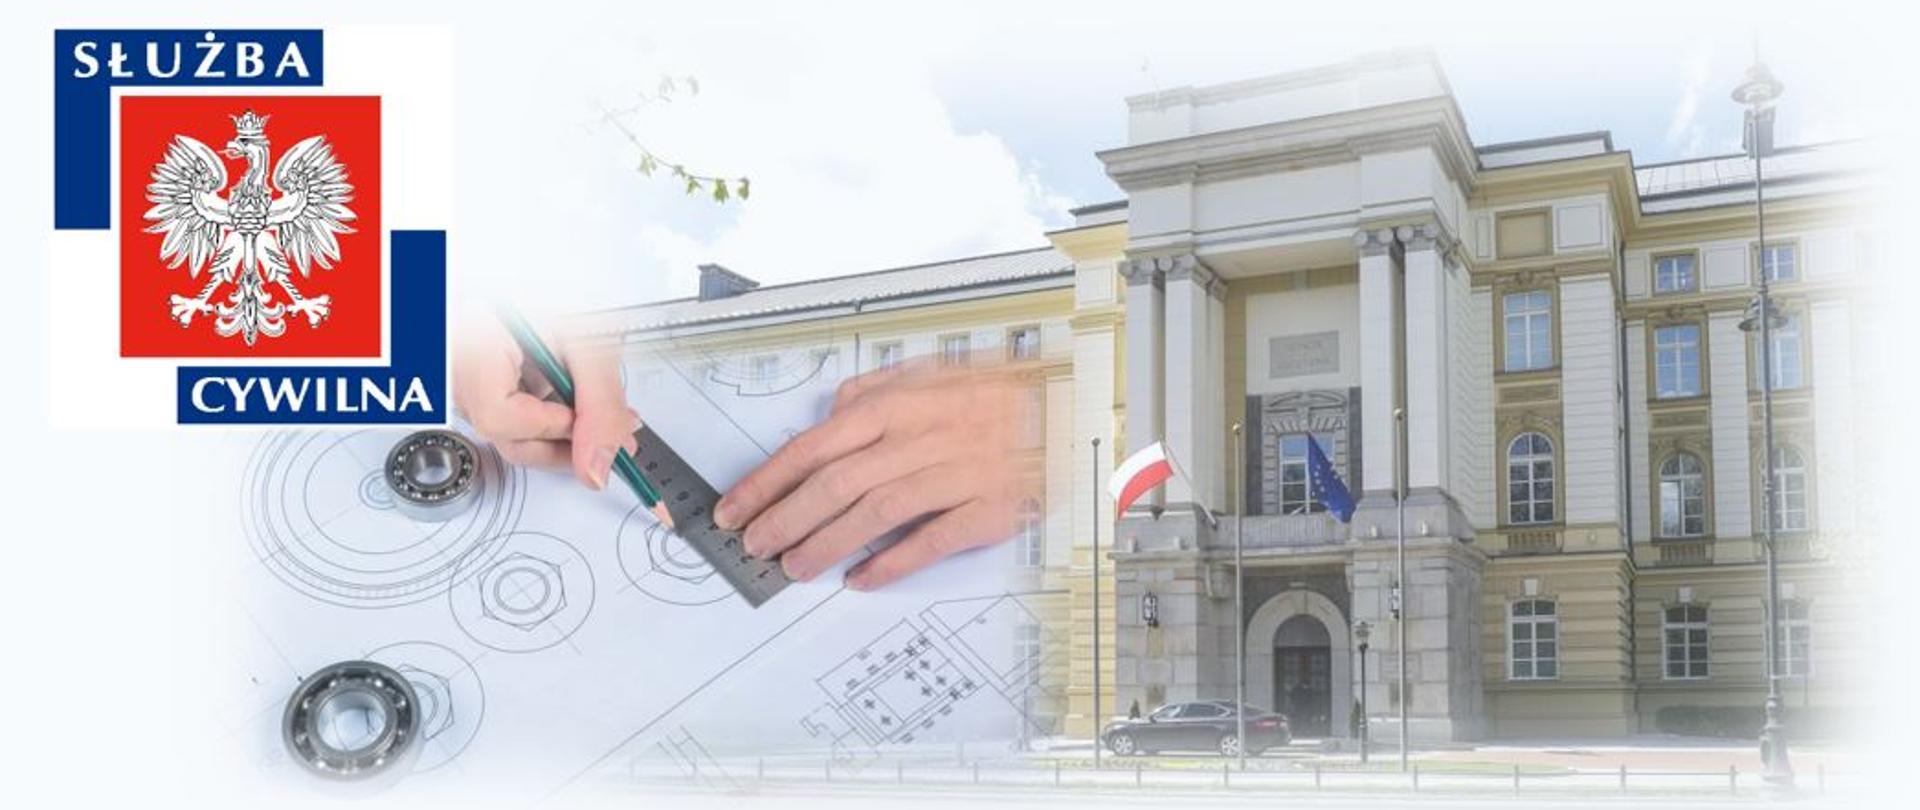 Logo służby cywilnej, zdjęcie Kancelarii Prezesa Rady Ministrów oraz zdjęcie rąk rysujących projekt graficzny